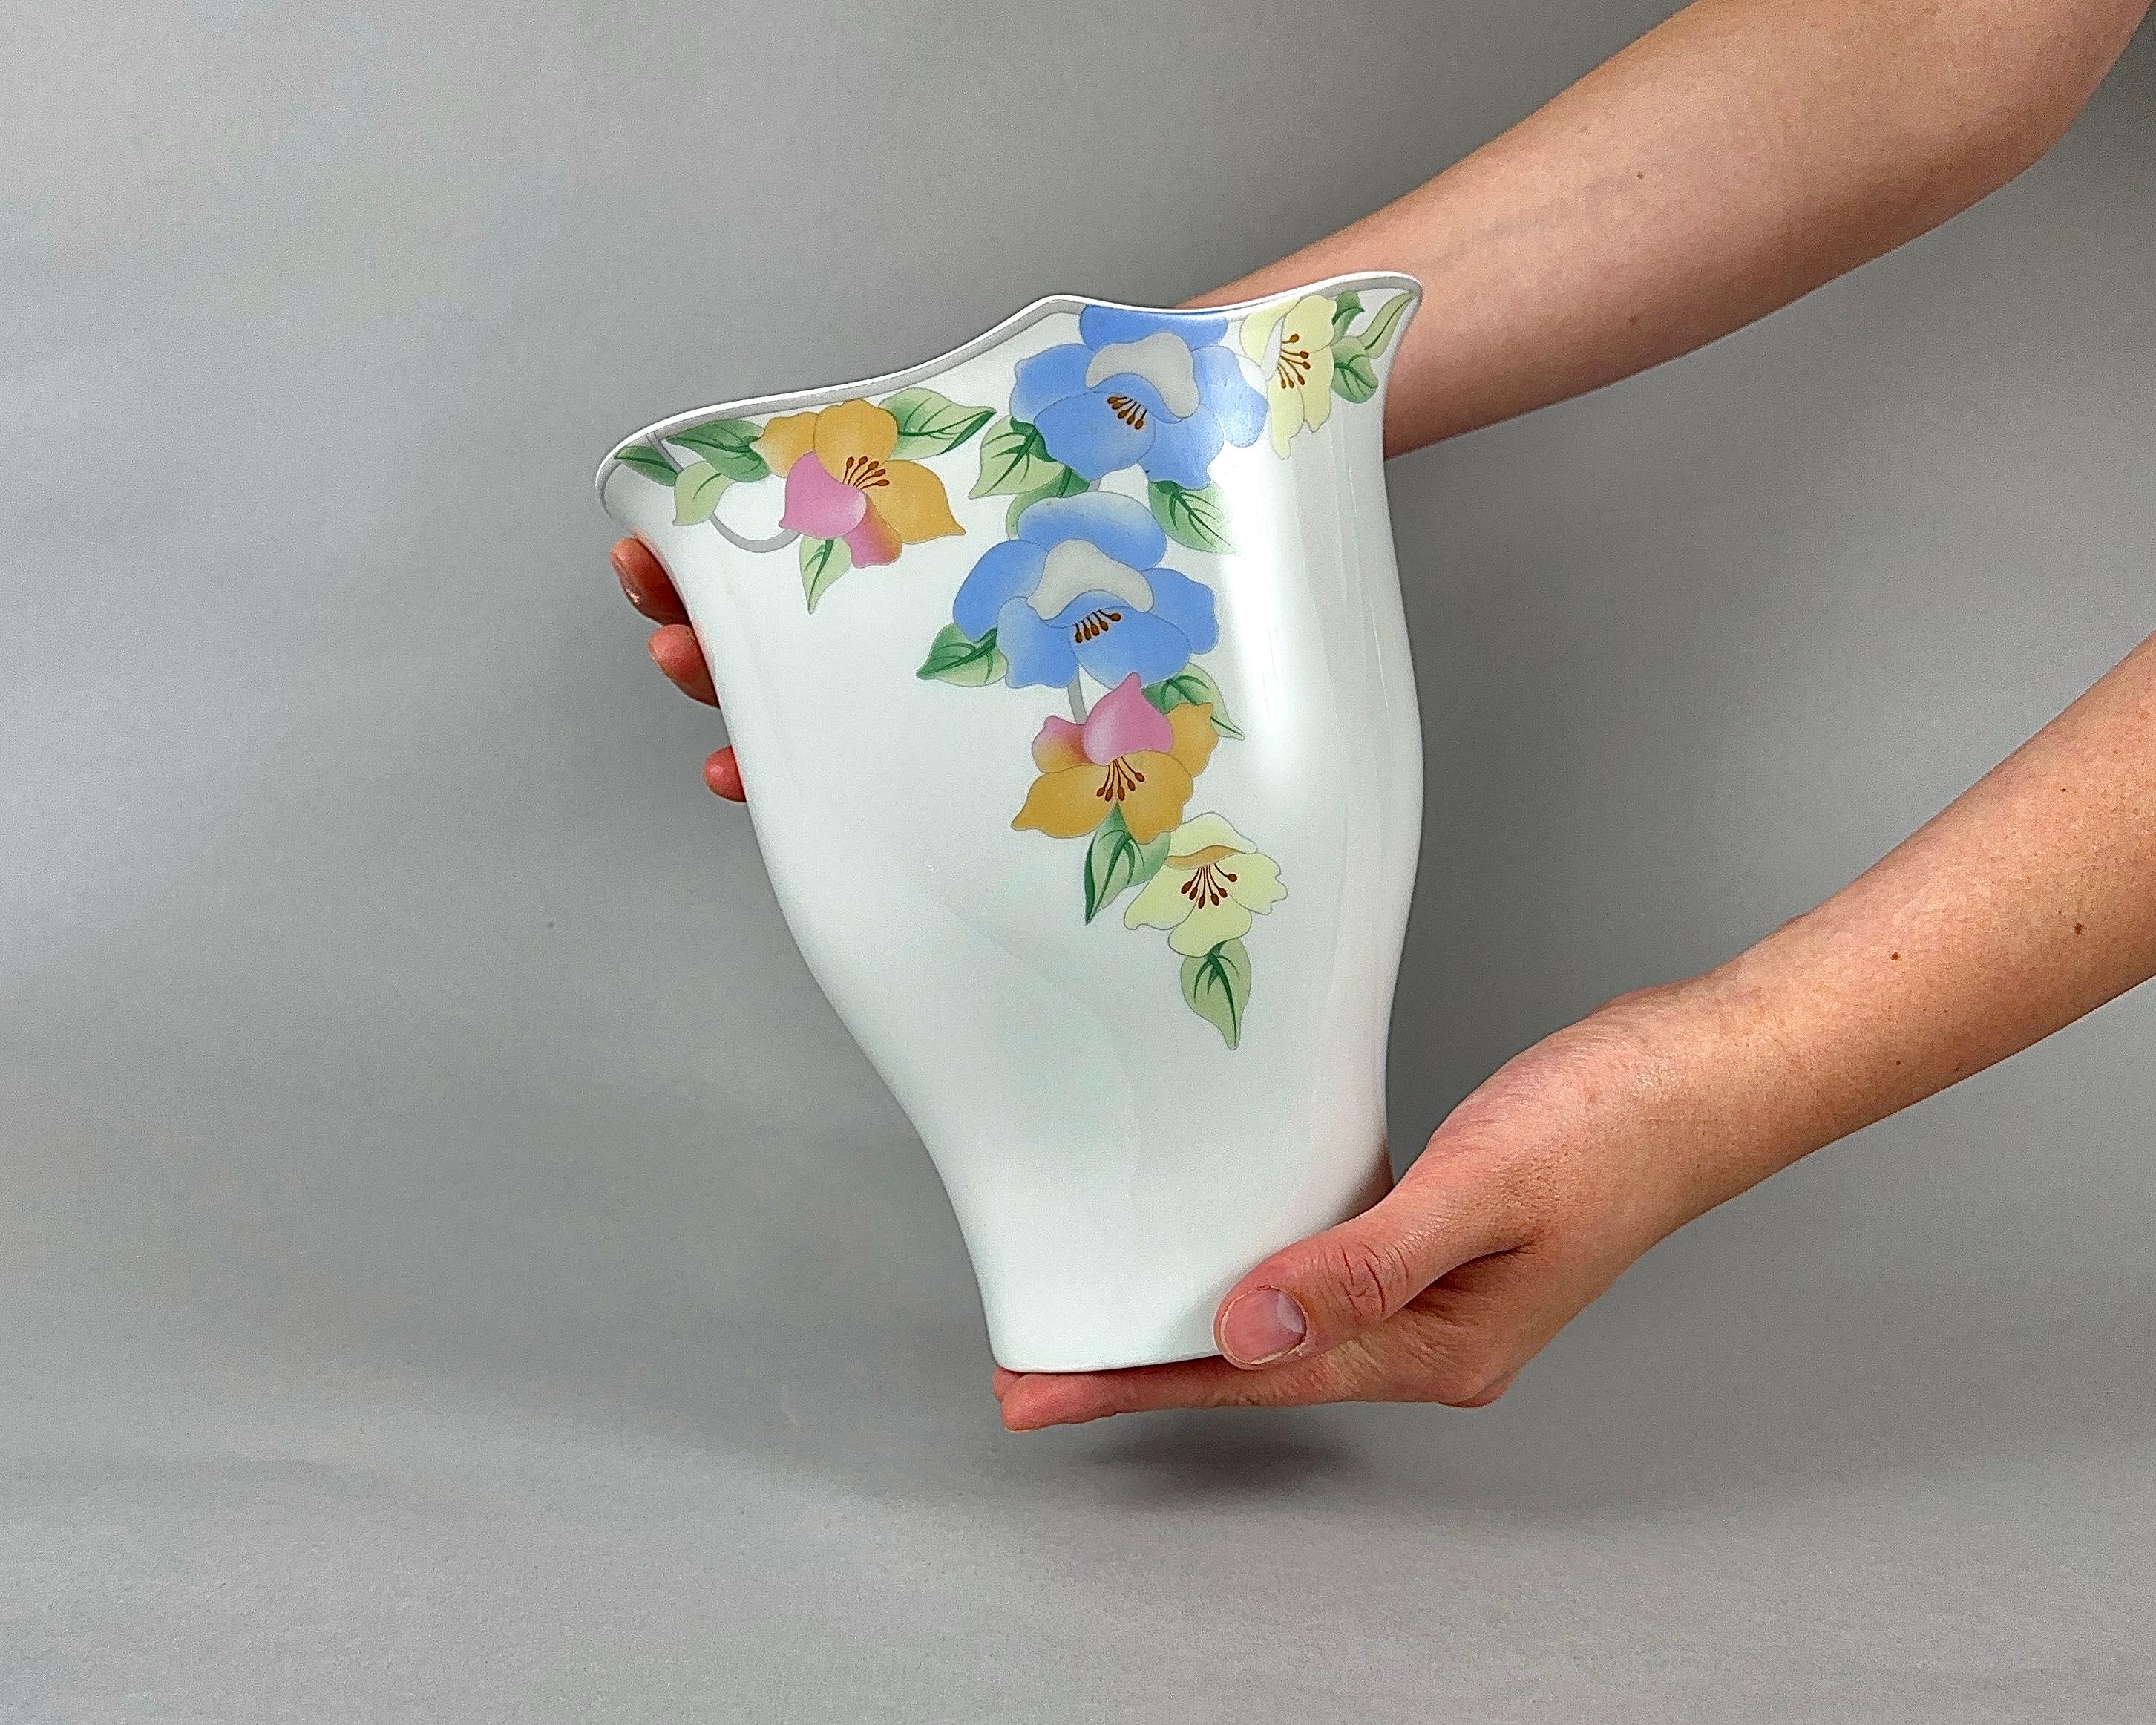 Schöne Porzellanvase von der bayerischen Firma Schumann Arzberg.

Diese klassische Vase in interessanter und eleganter Form wurde im 20. Jahrhundert geschaffen. 

Sie wurde aus dem hochwertigsten weißen Porzellan einer renommierten Marke